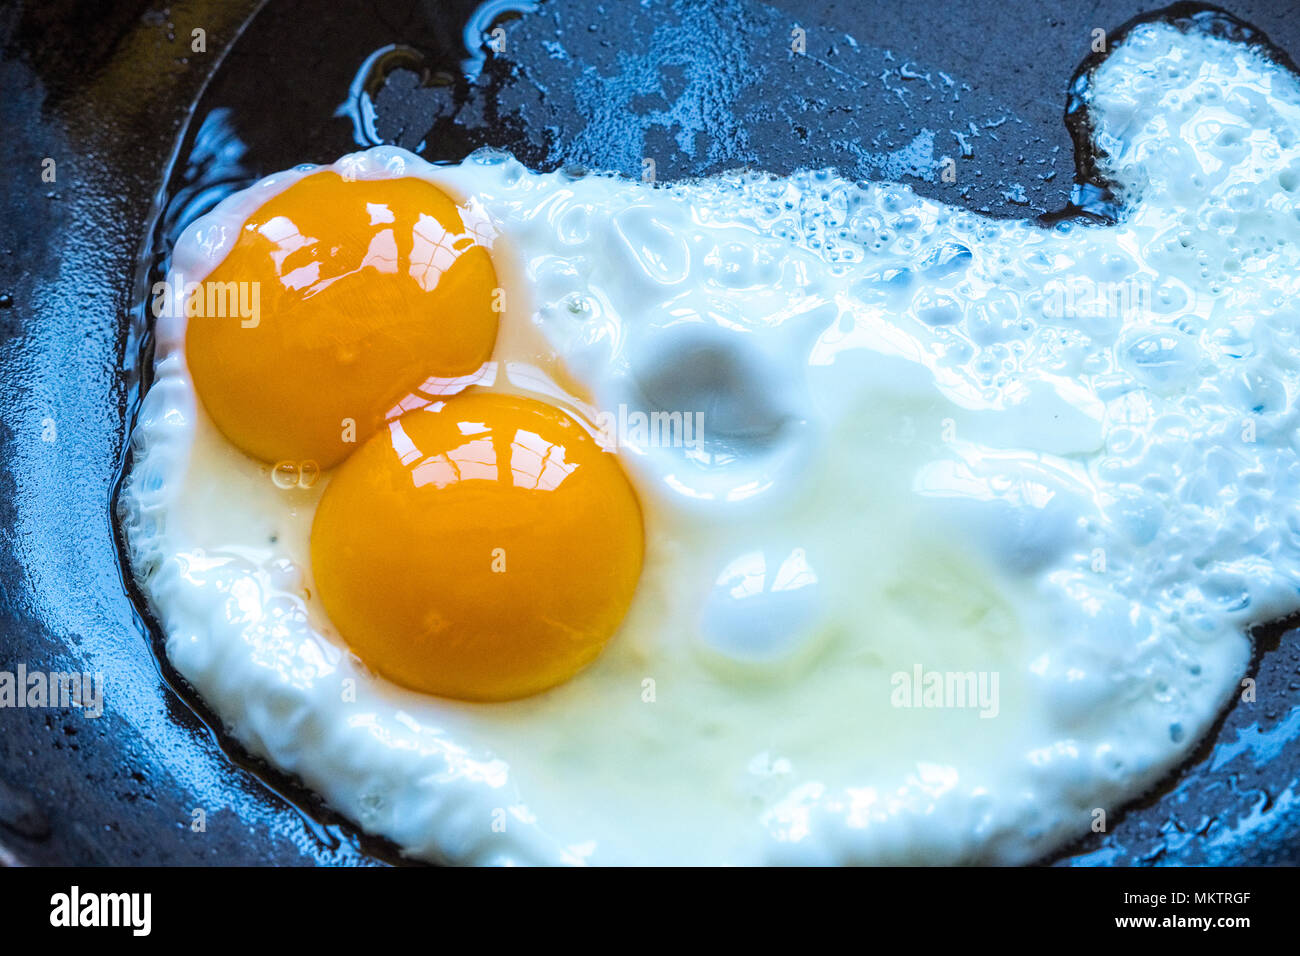 A double yoke egg frying in a pan Stock Photo